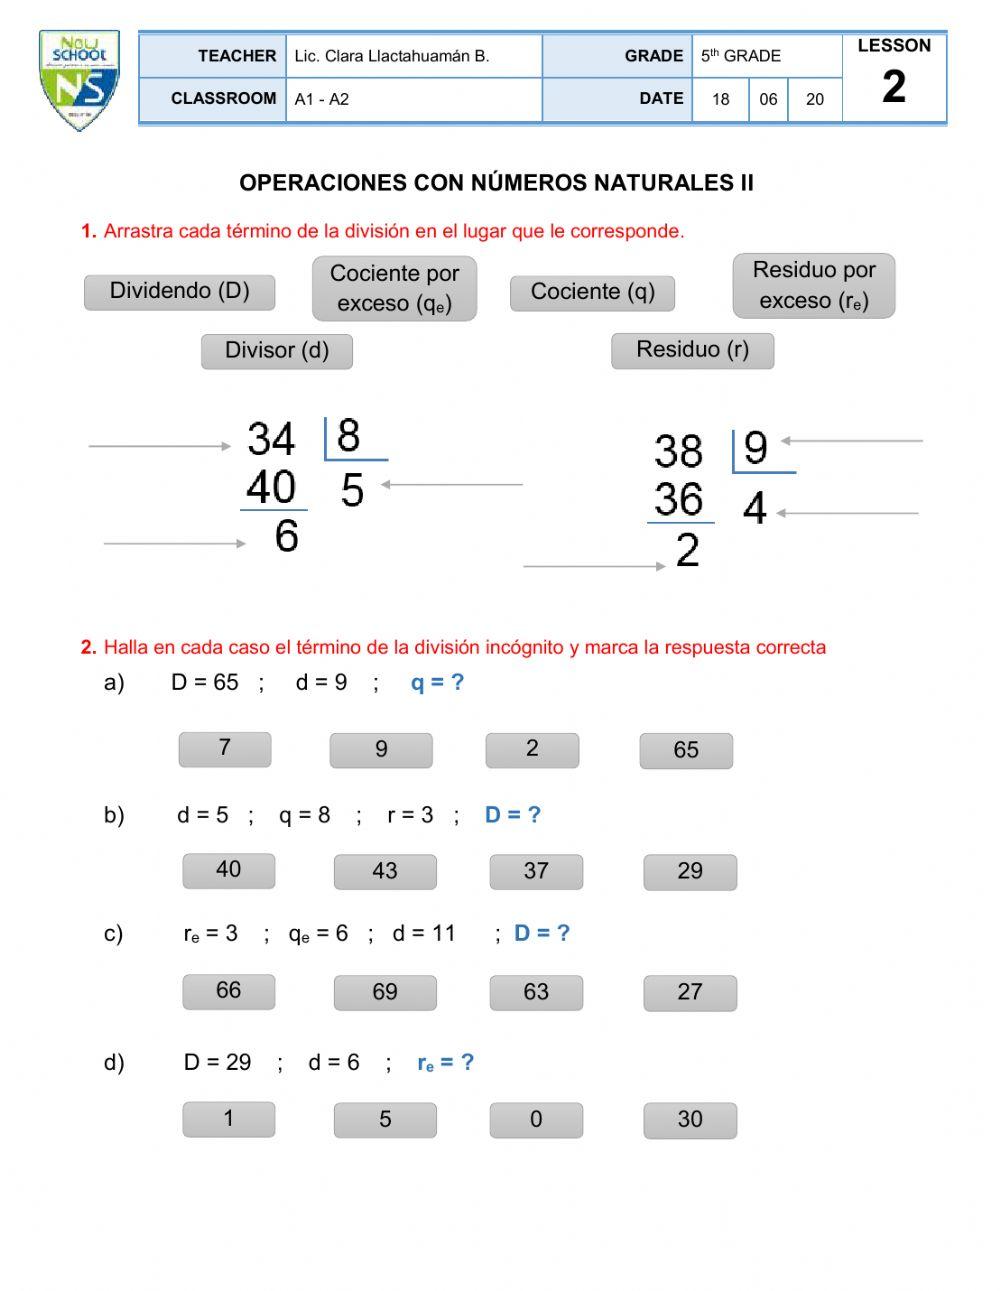 Operaciones con números naturales